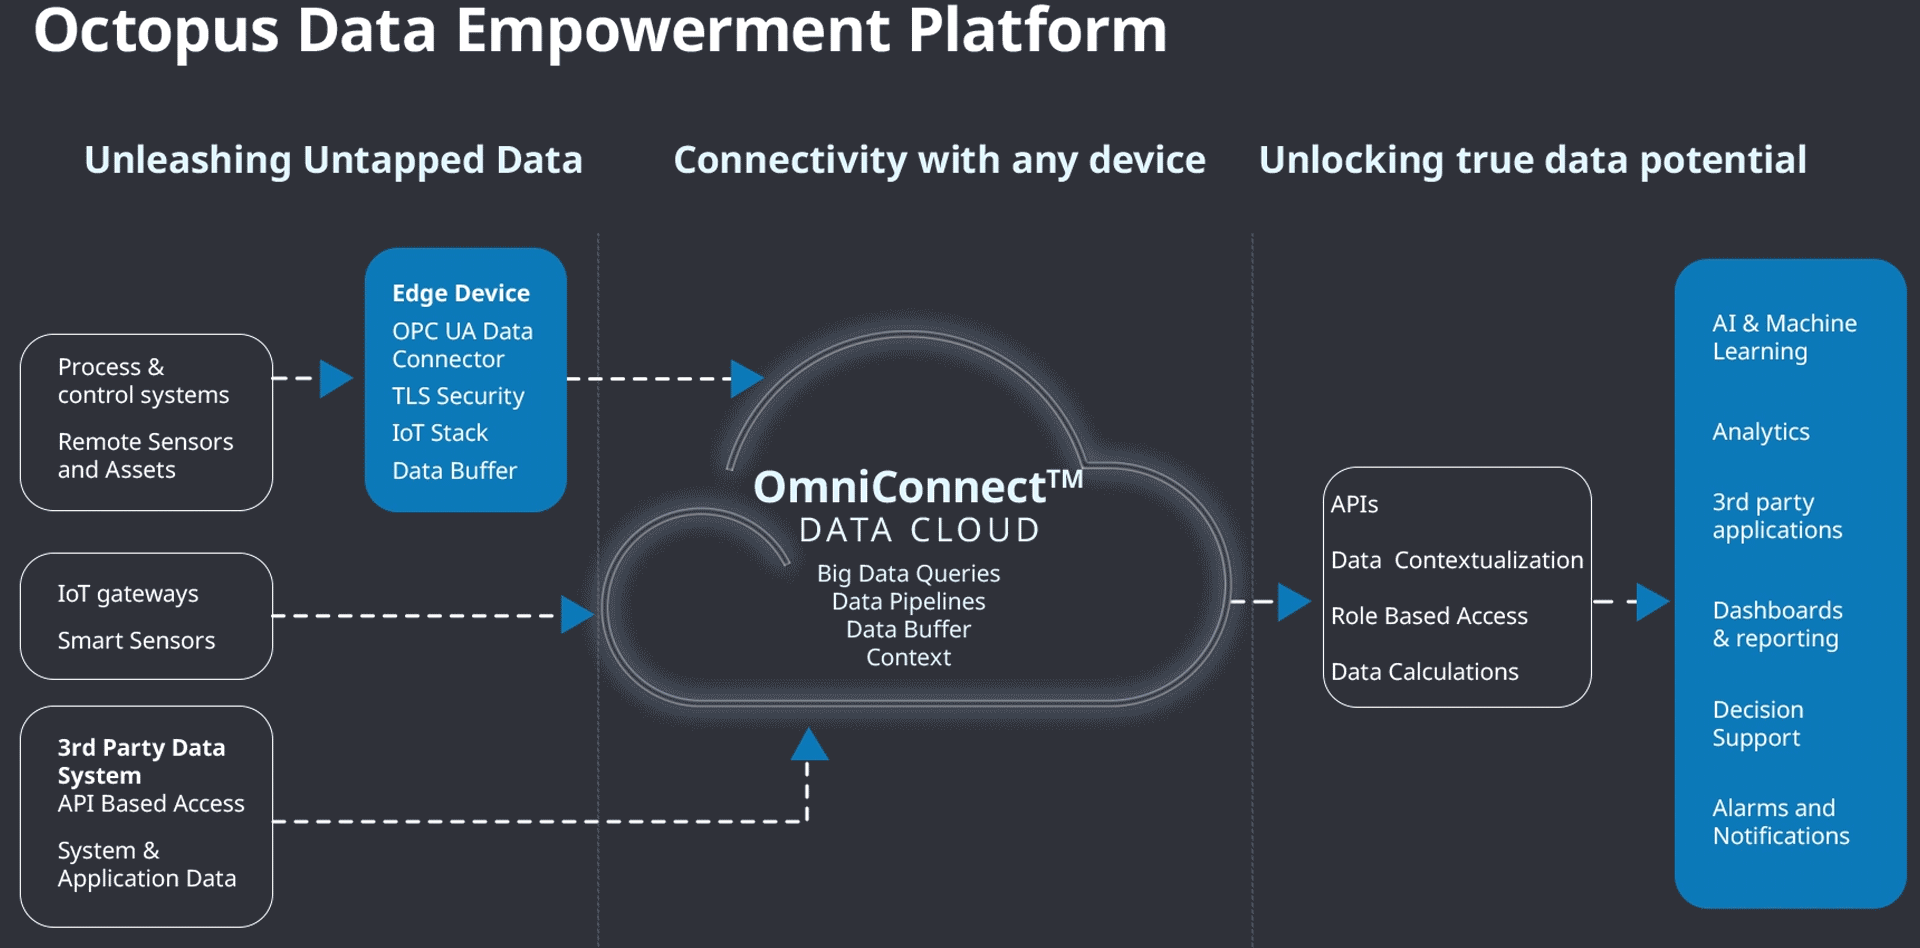 Octopus Data Empowerment Platform